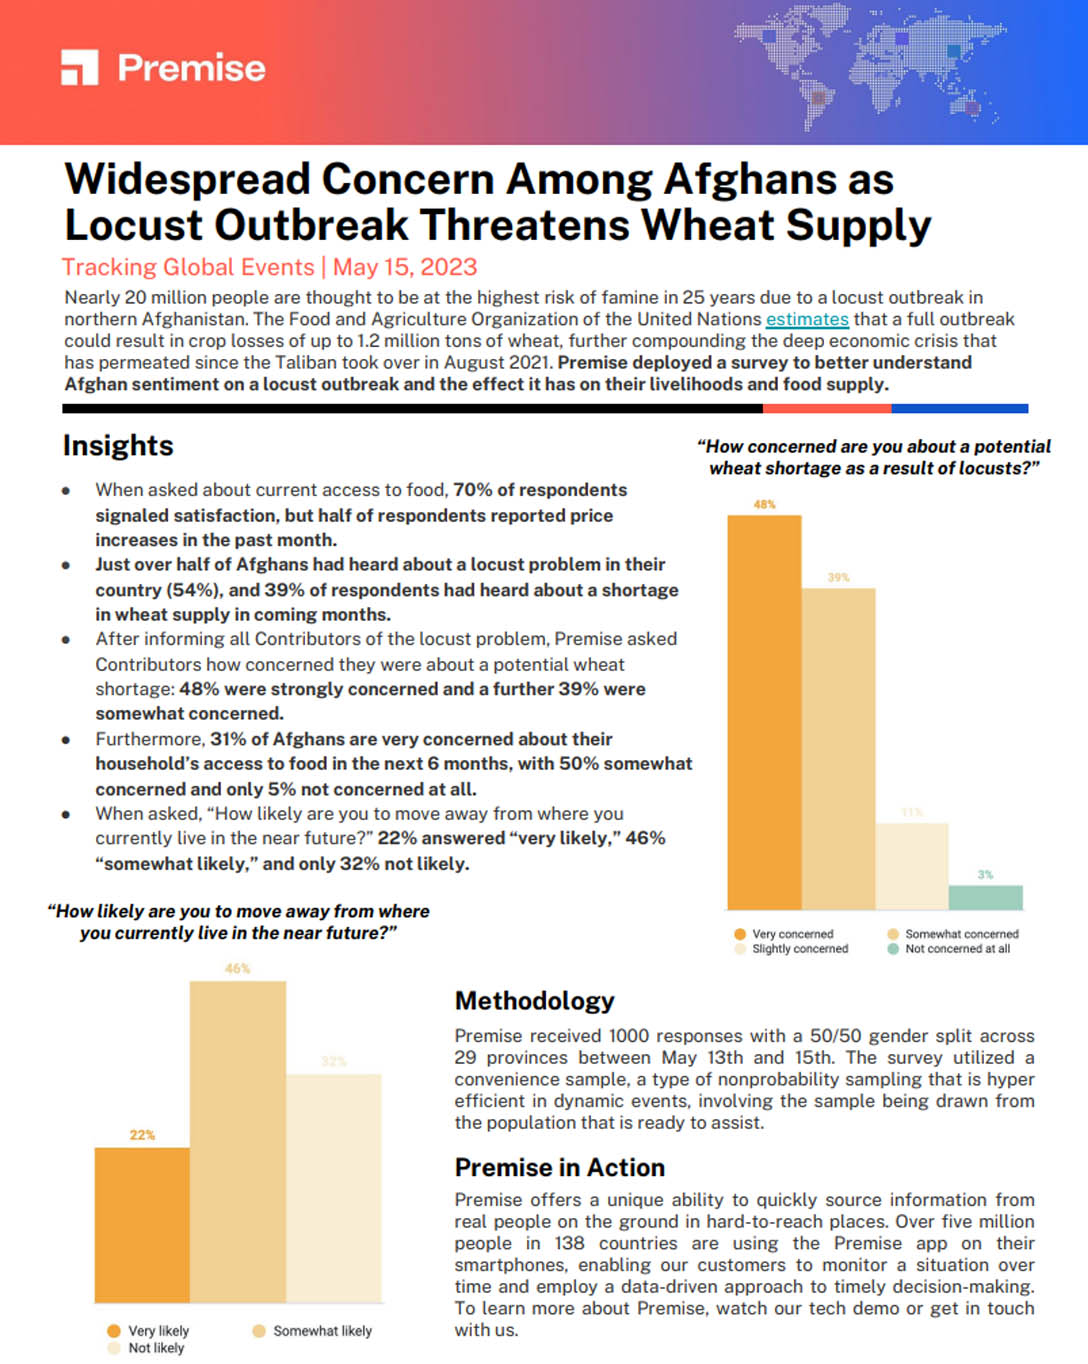 Preocupación generalizada entre los afganos: la plaga de langosta amenaza el suministro de trigo